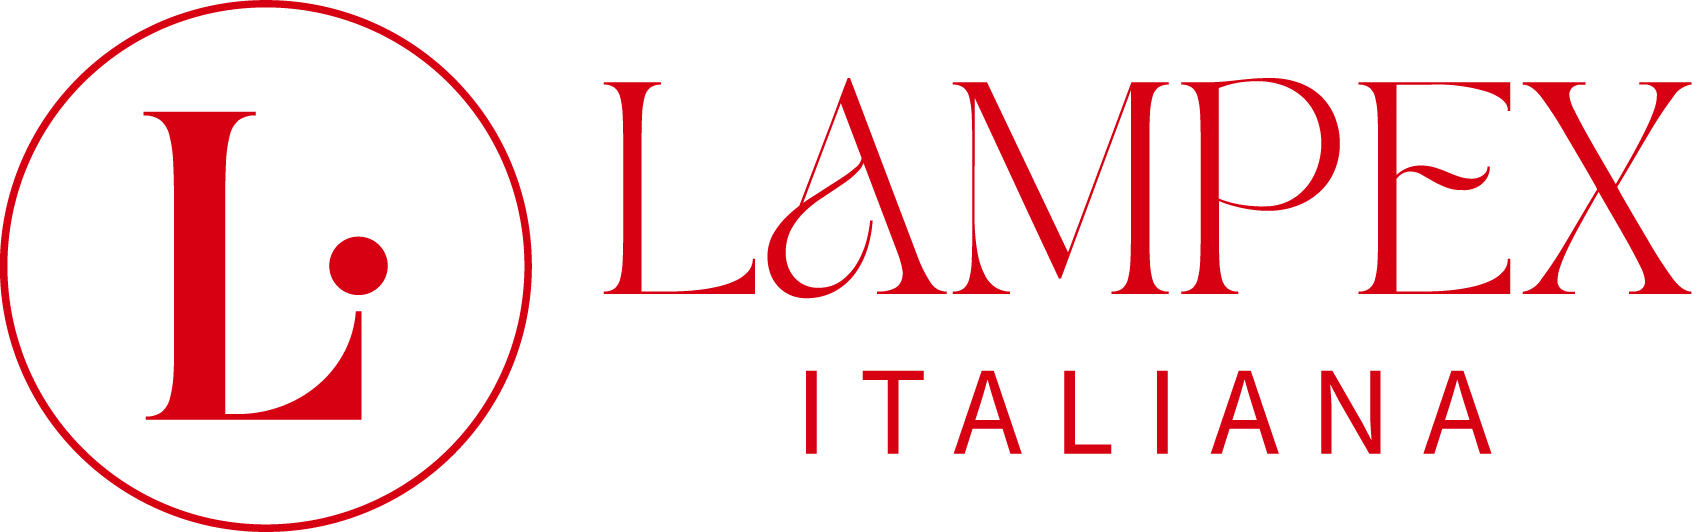 Logo esteso rosso lampex italiana